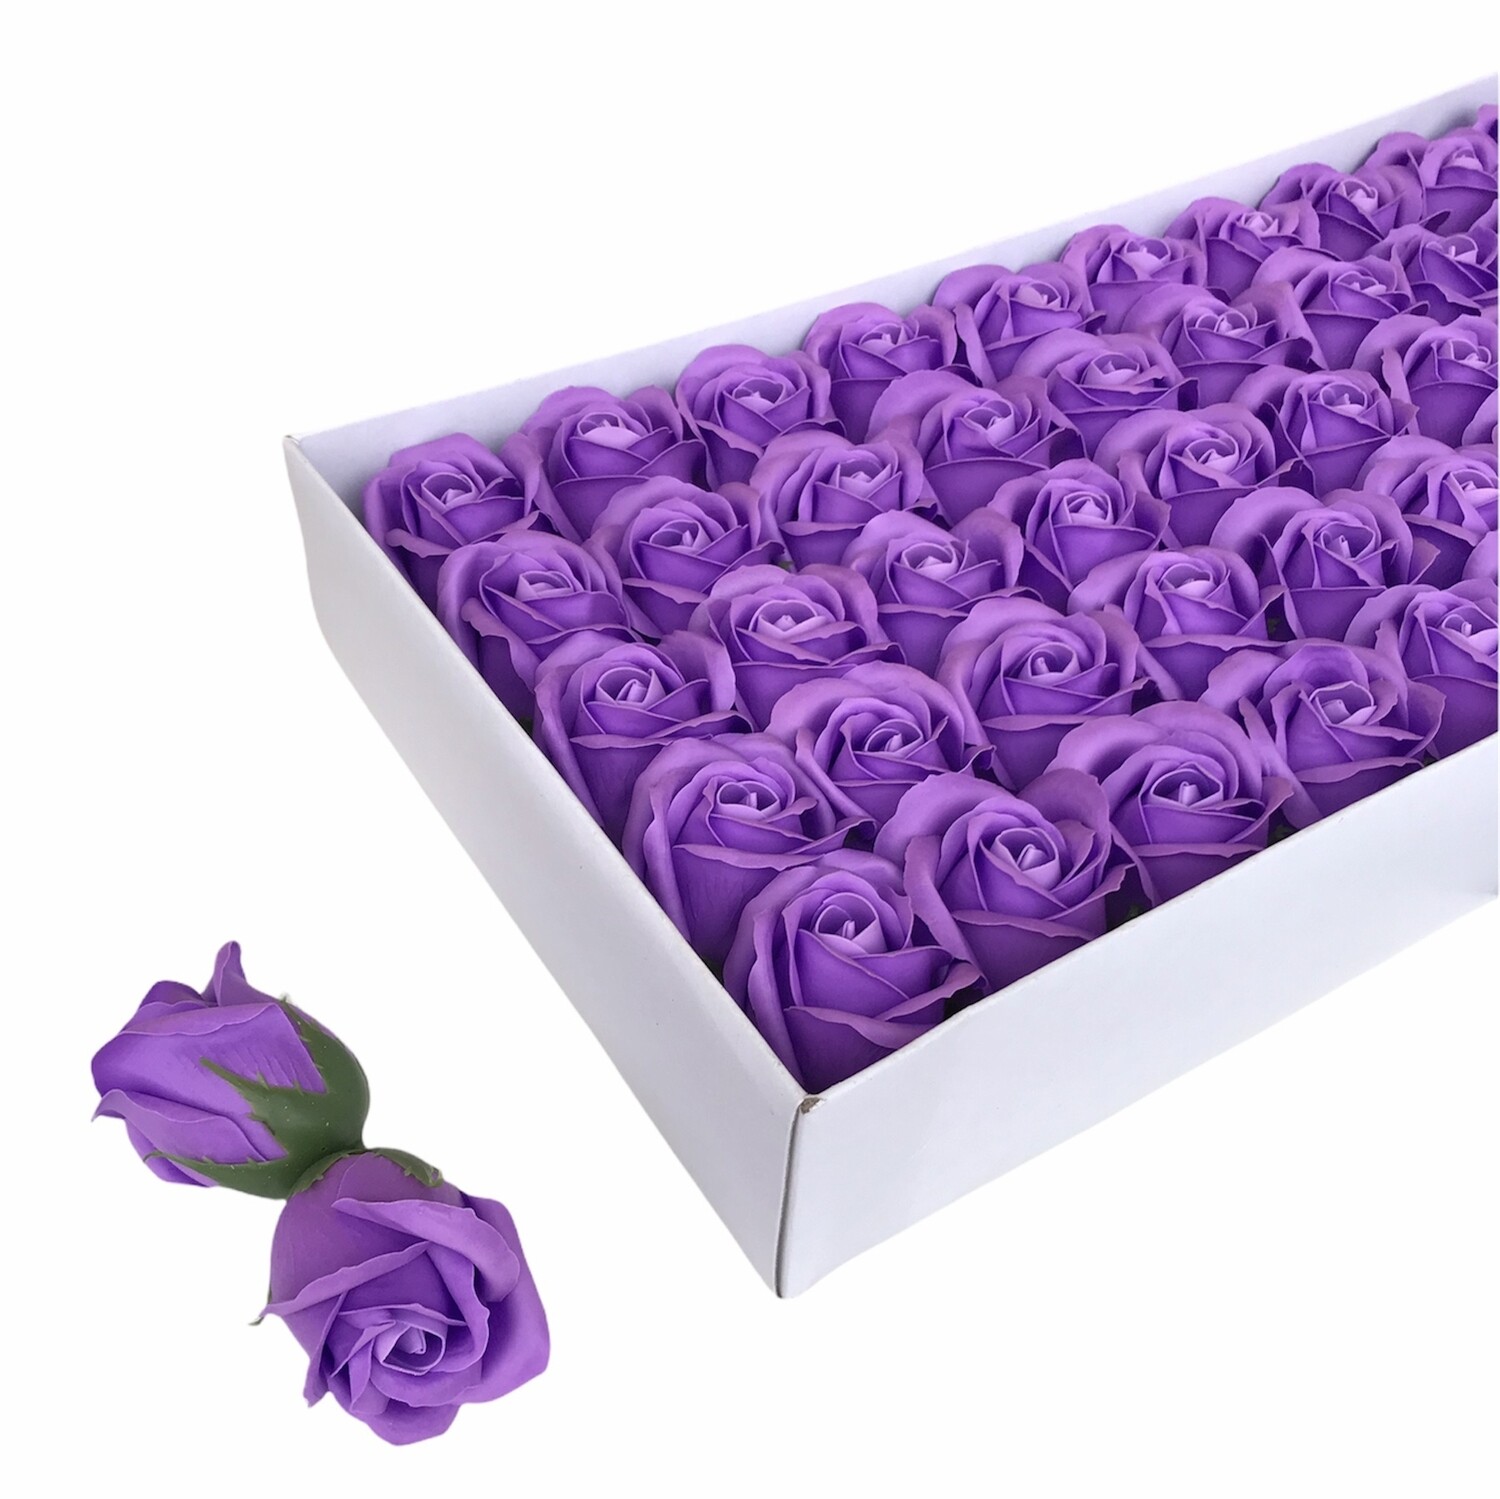 Мыльные розы, цвет - ФИОЛЕТОВЫЙ, размер 5х5 см, в упаковке 50 шт